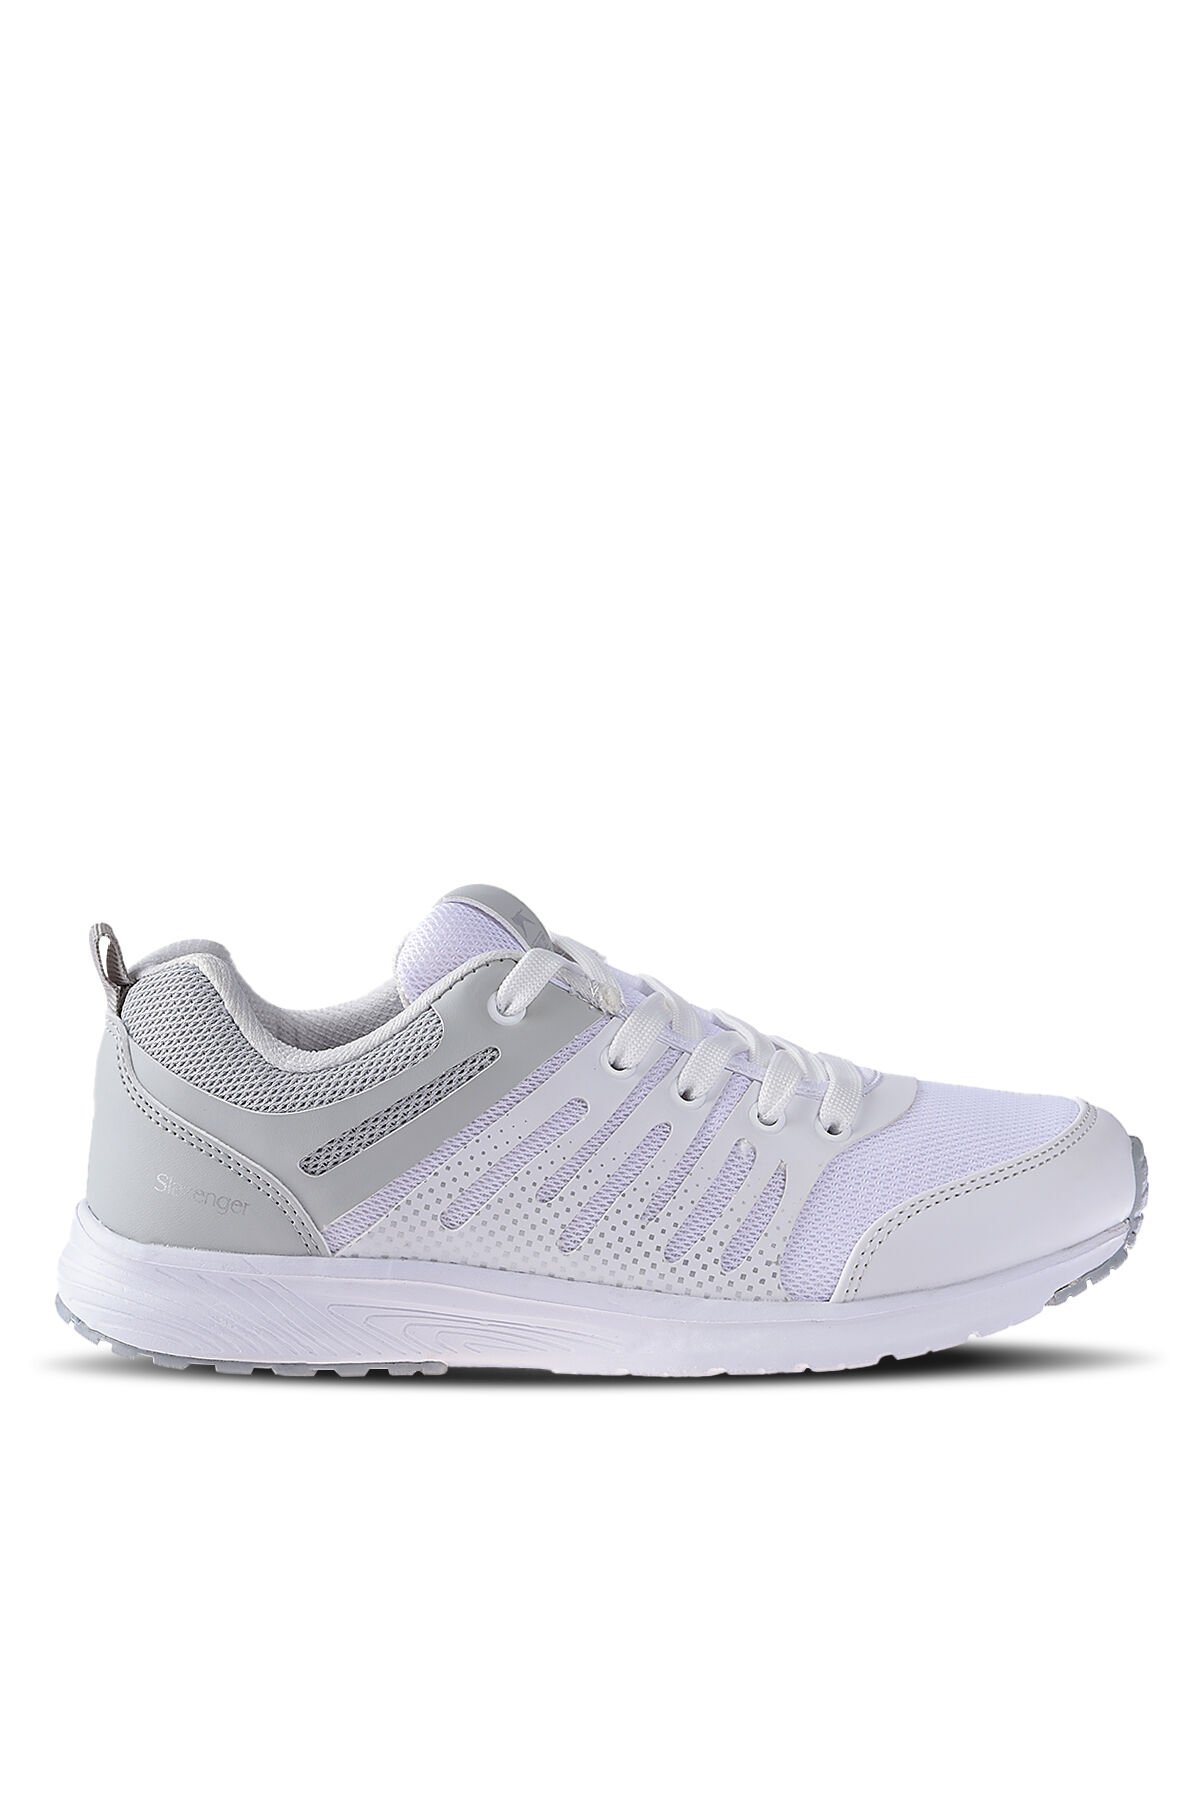 FONDA Sneaker Kadın Ayakkabı Beyaz - Thumbnail